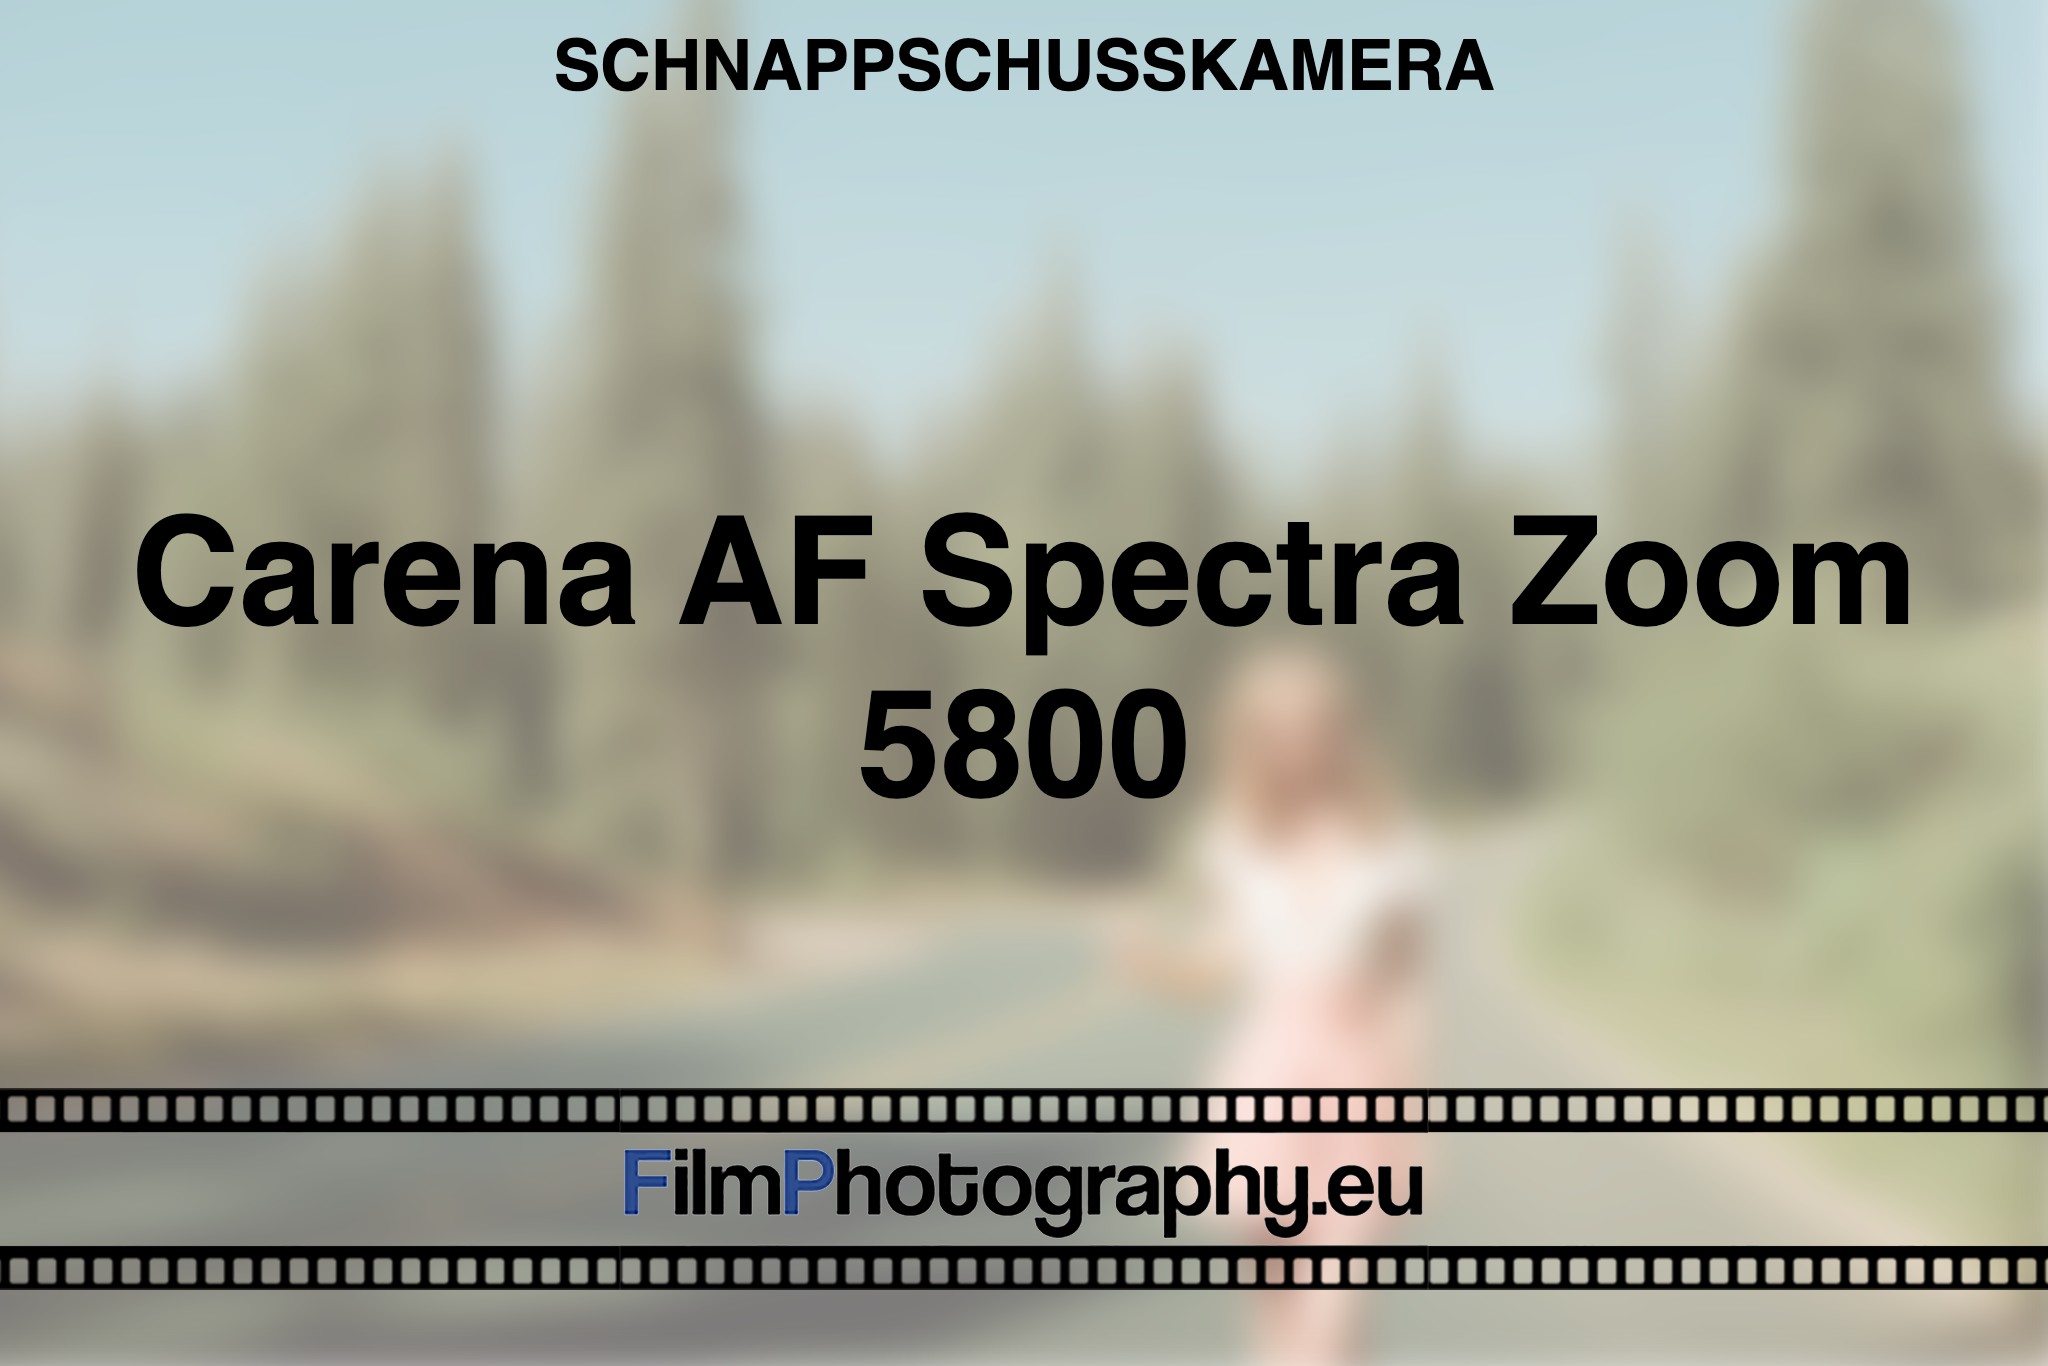 carena-af-spectra-zoom-5800-schnappschusskamera-bnv